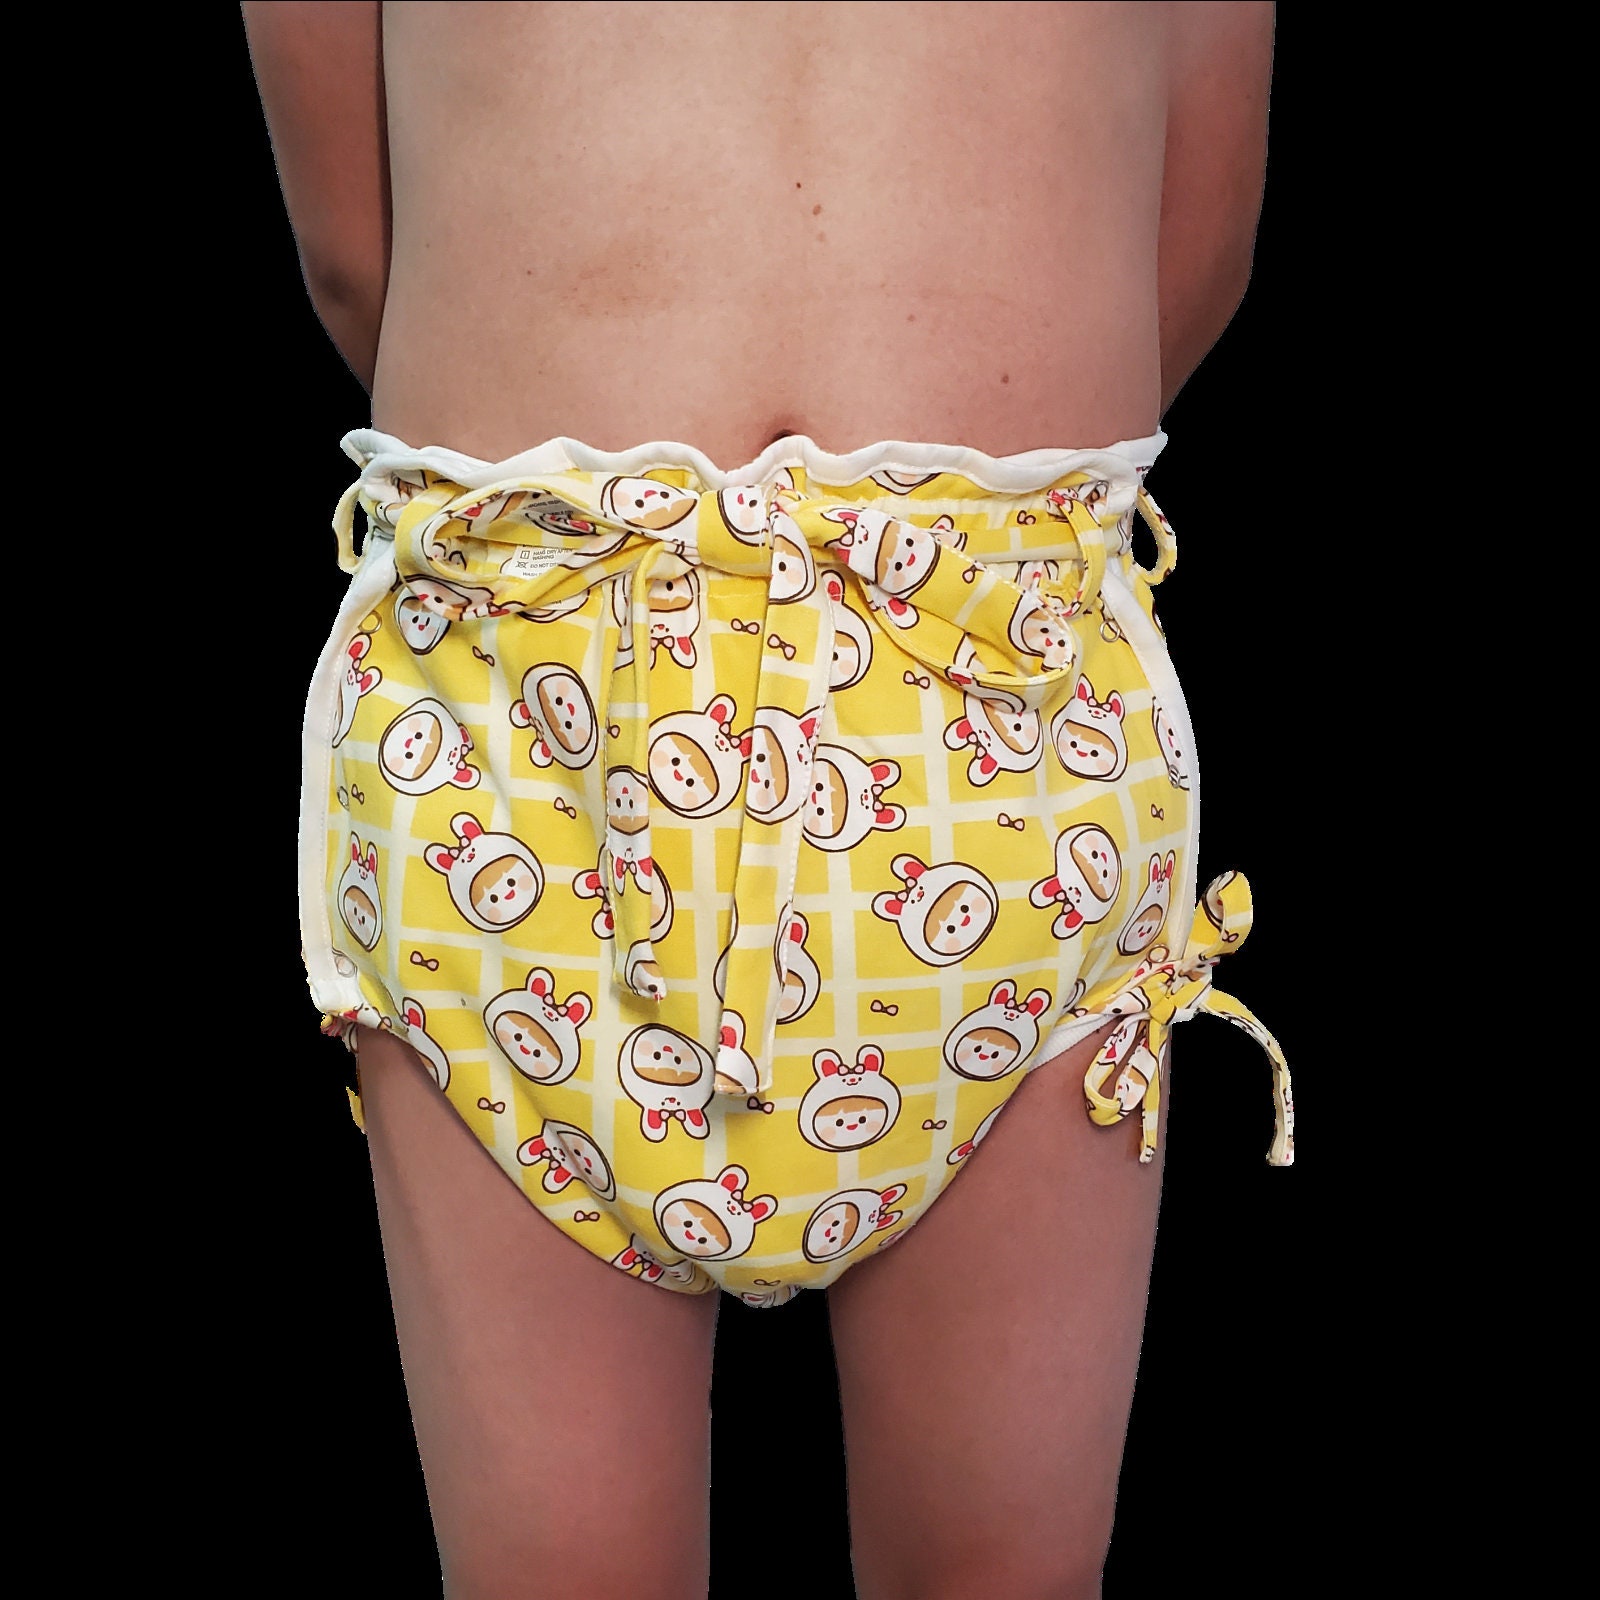 Rubber PVC Adult Baby Euroflex Incontinence Diaper Pants Rubber Pants  Yellow Transparent 